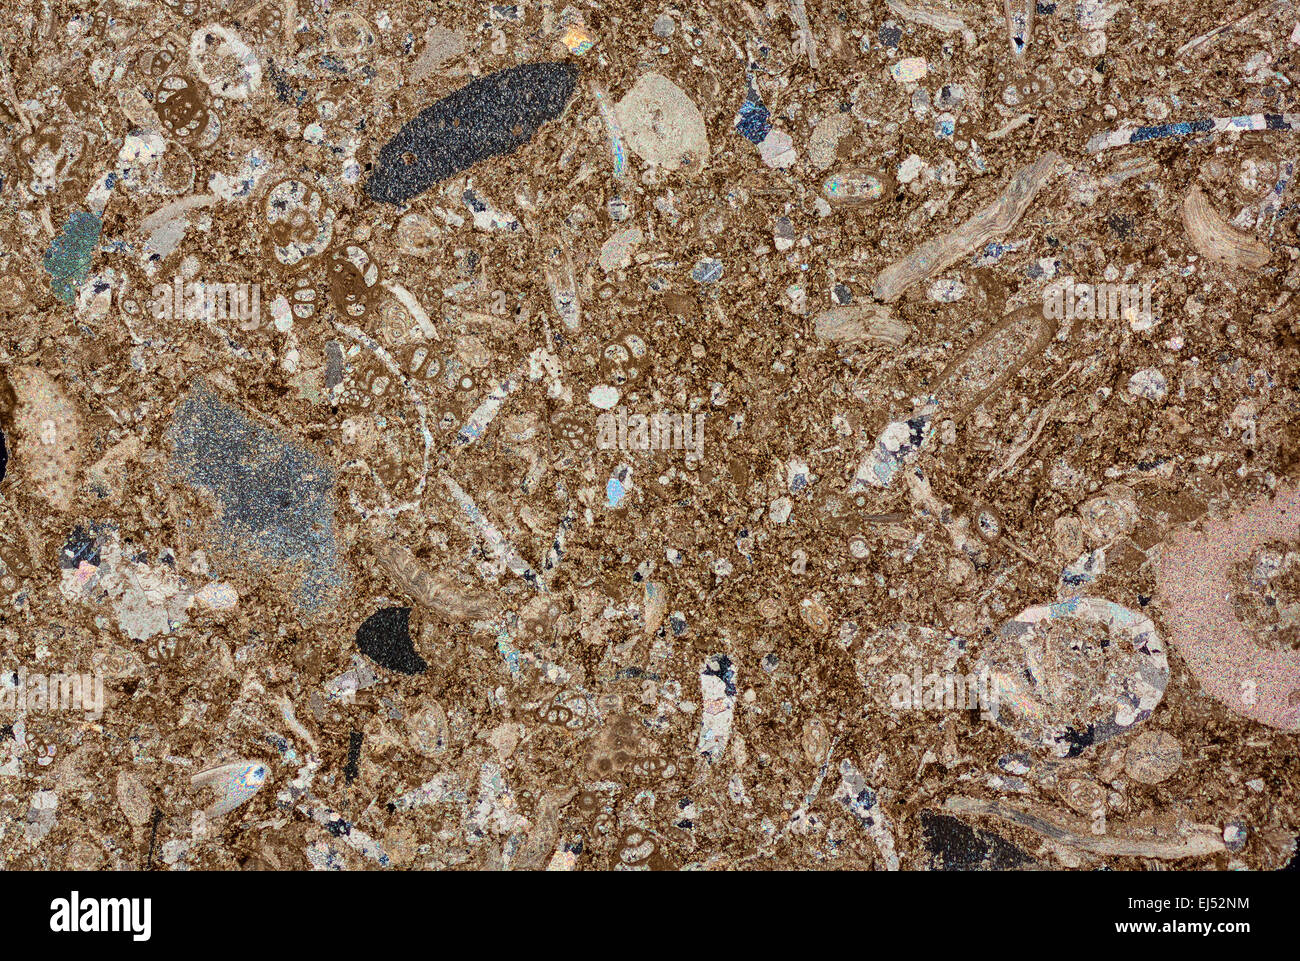 Rocce sedimentarie calcaree, calcaree e dolomitiche di fossili fotomicrografia, croce illuminazione polarizzata, Somerset REGNO UNITO Foto Stock